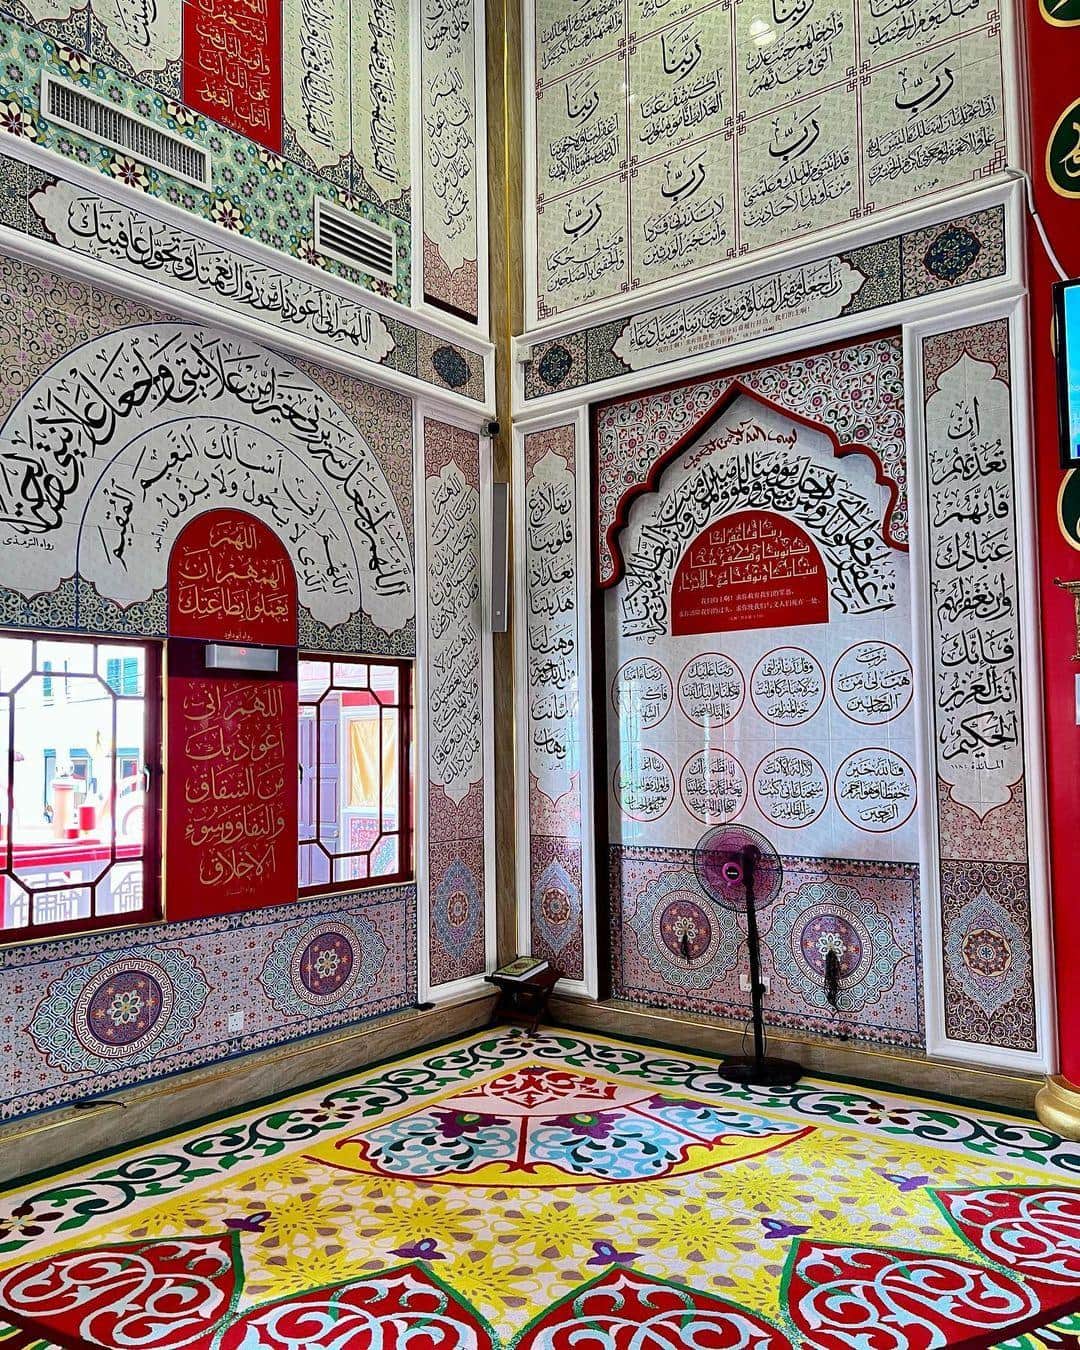 Masjid Al-Khairiah - prayer hall